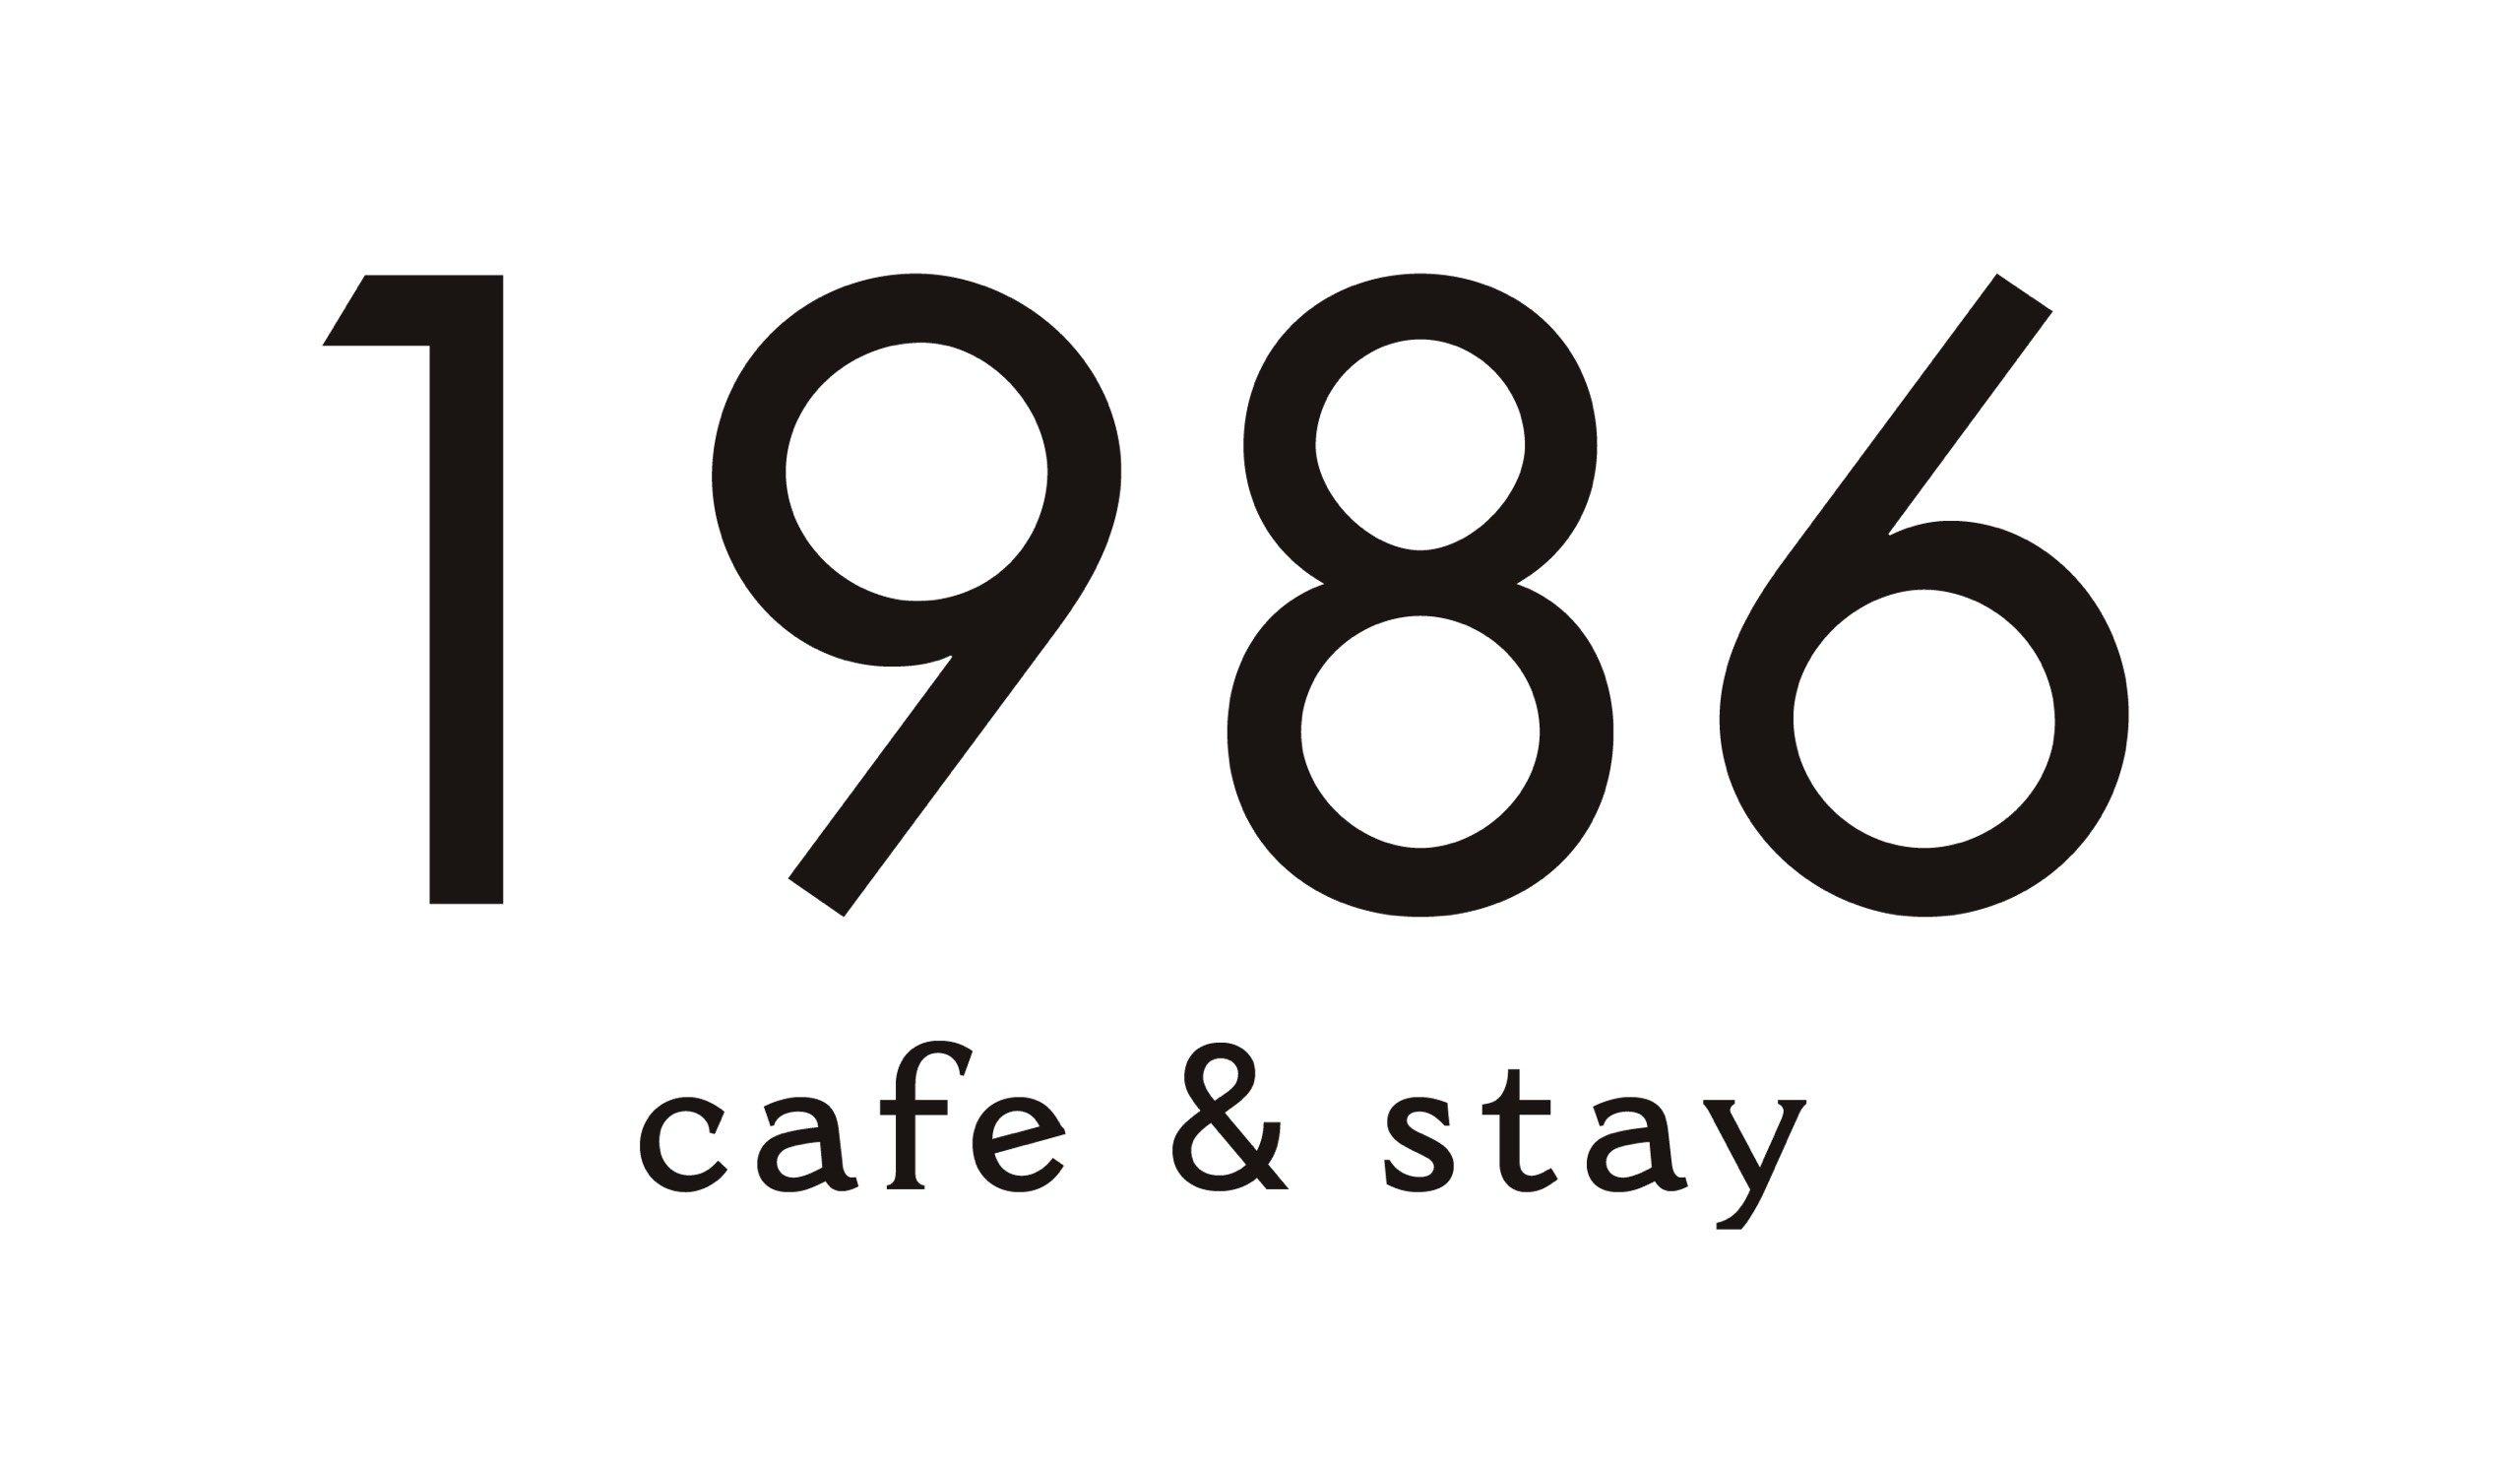 1986 CAFE & STAY